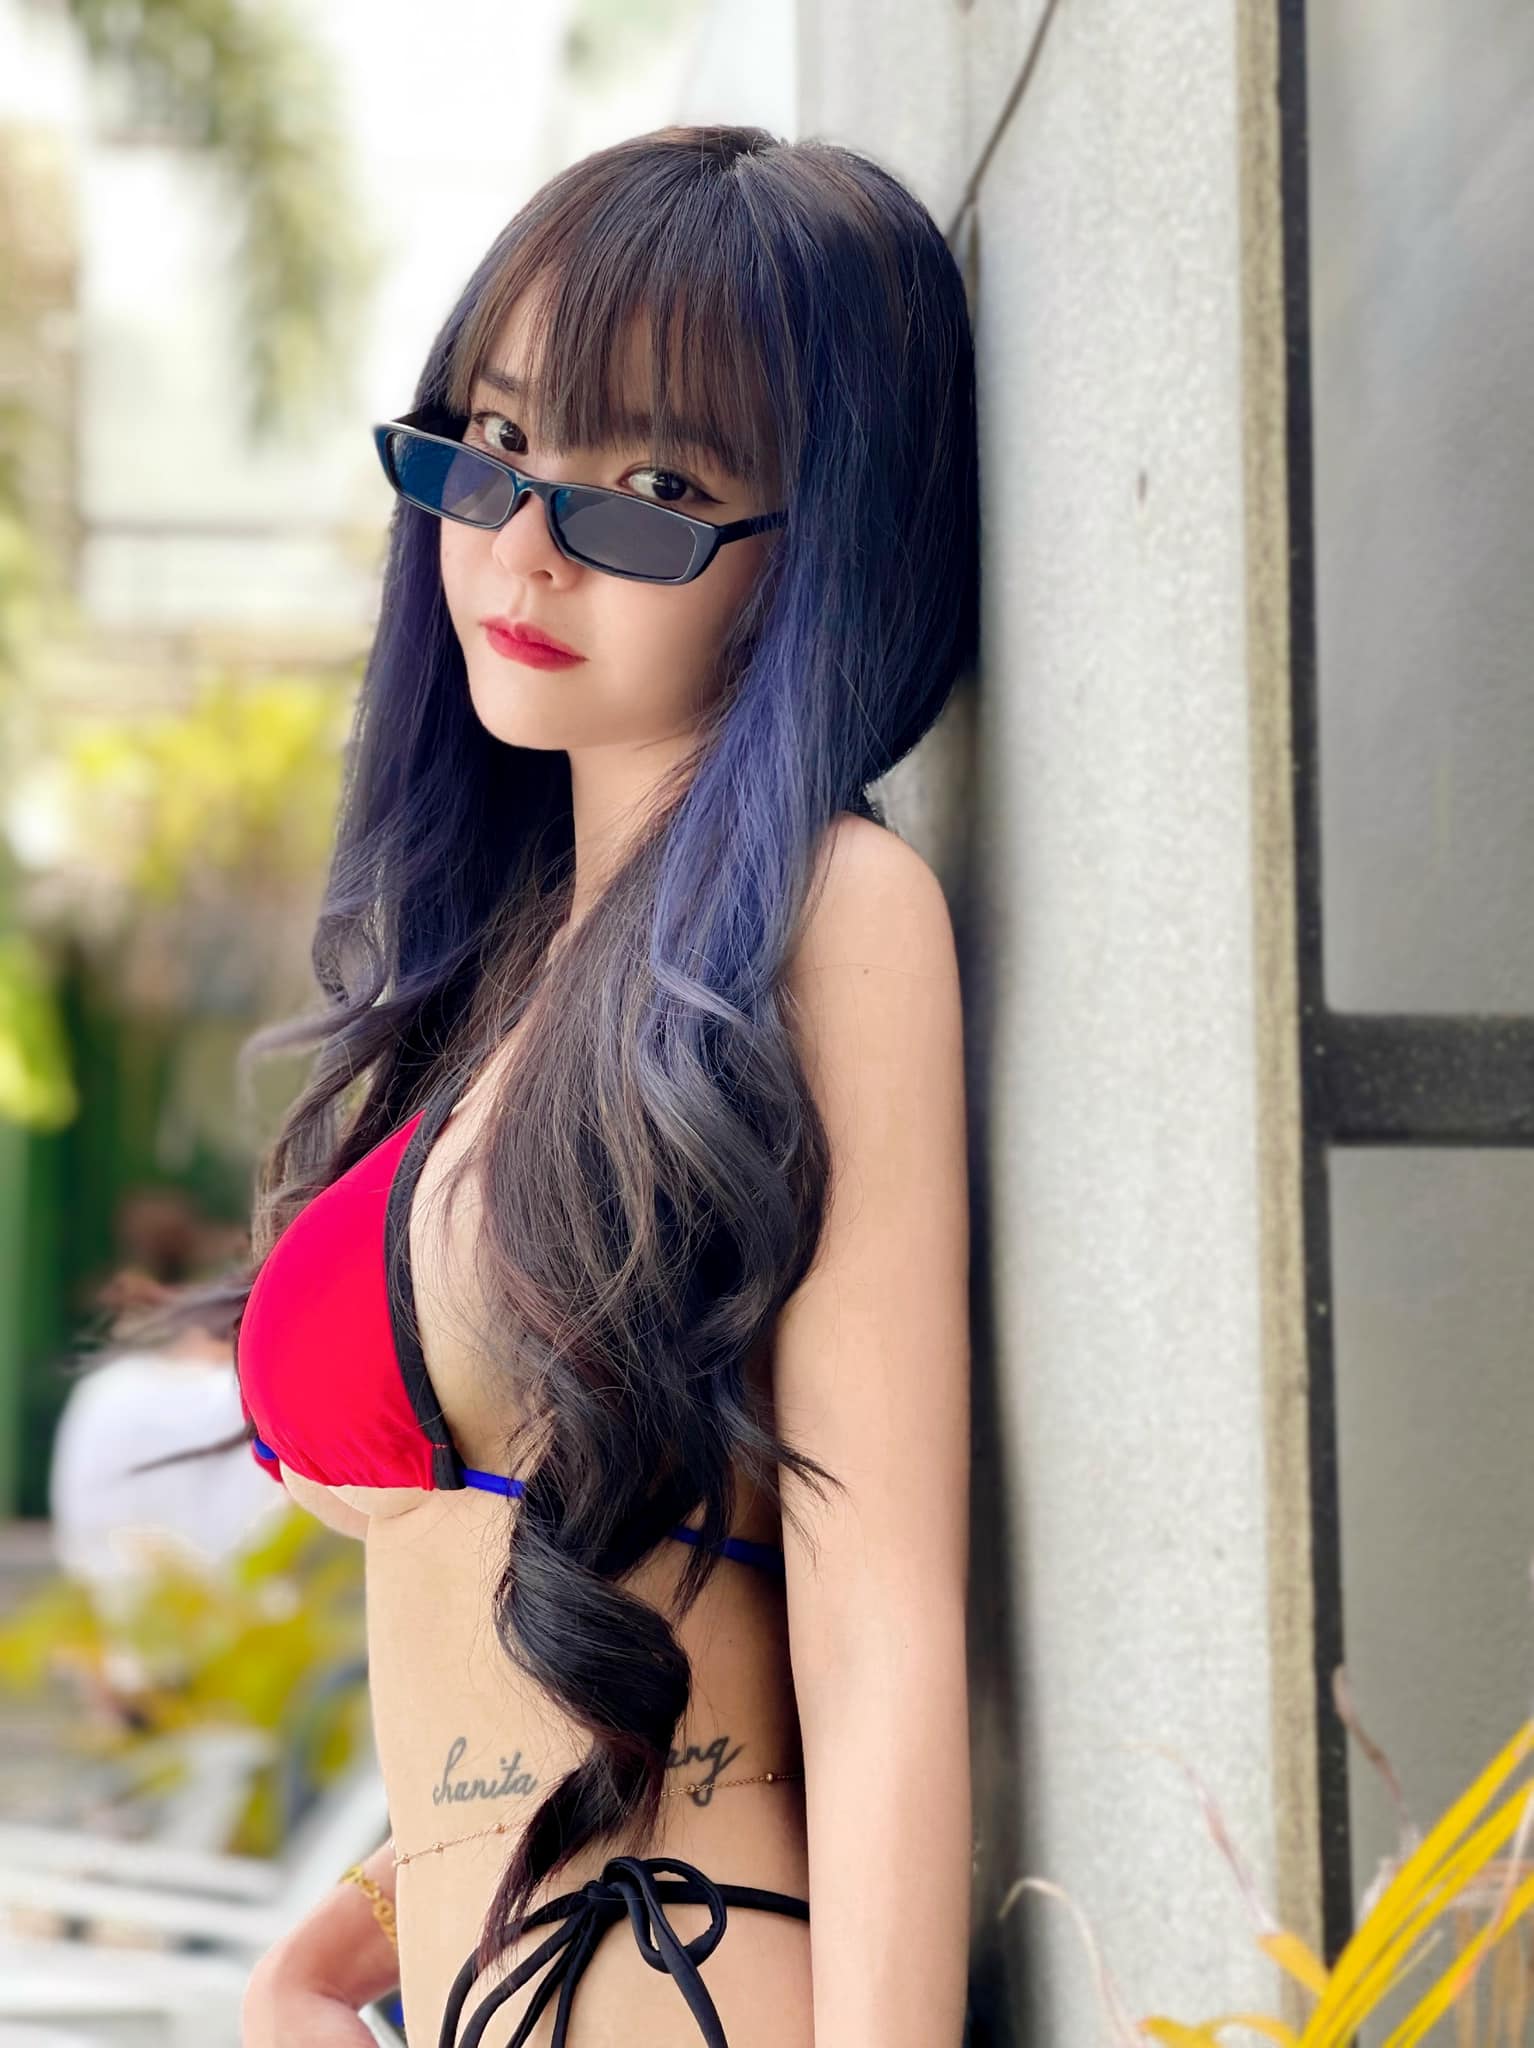 รูปสาวน่ารัก น้องแสตมป์ ชนิตา นักร้องสาวเสียงใส หุ่นเซ็กซี่ ตัวเล็ก สเปคหนุ่มไทย